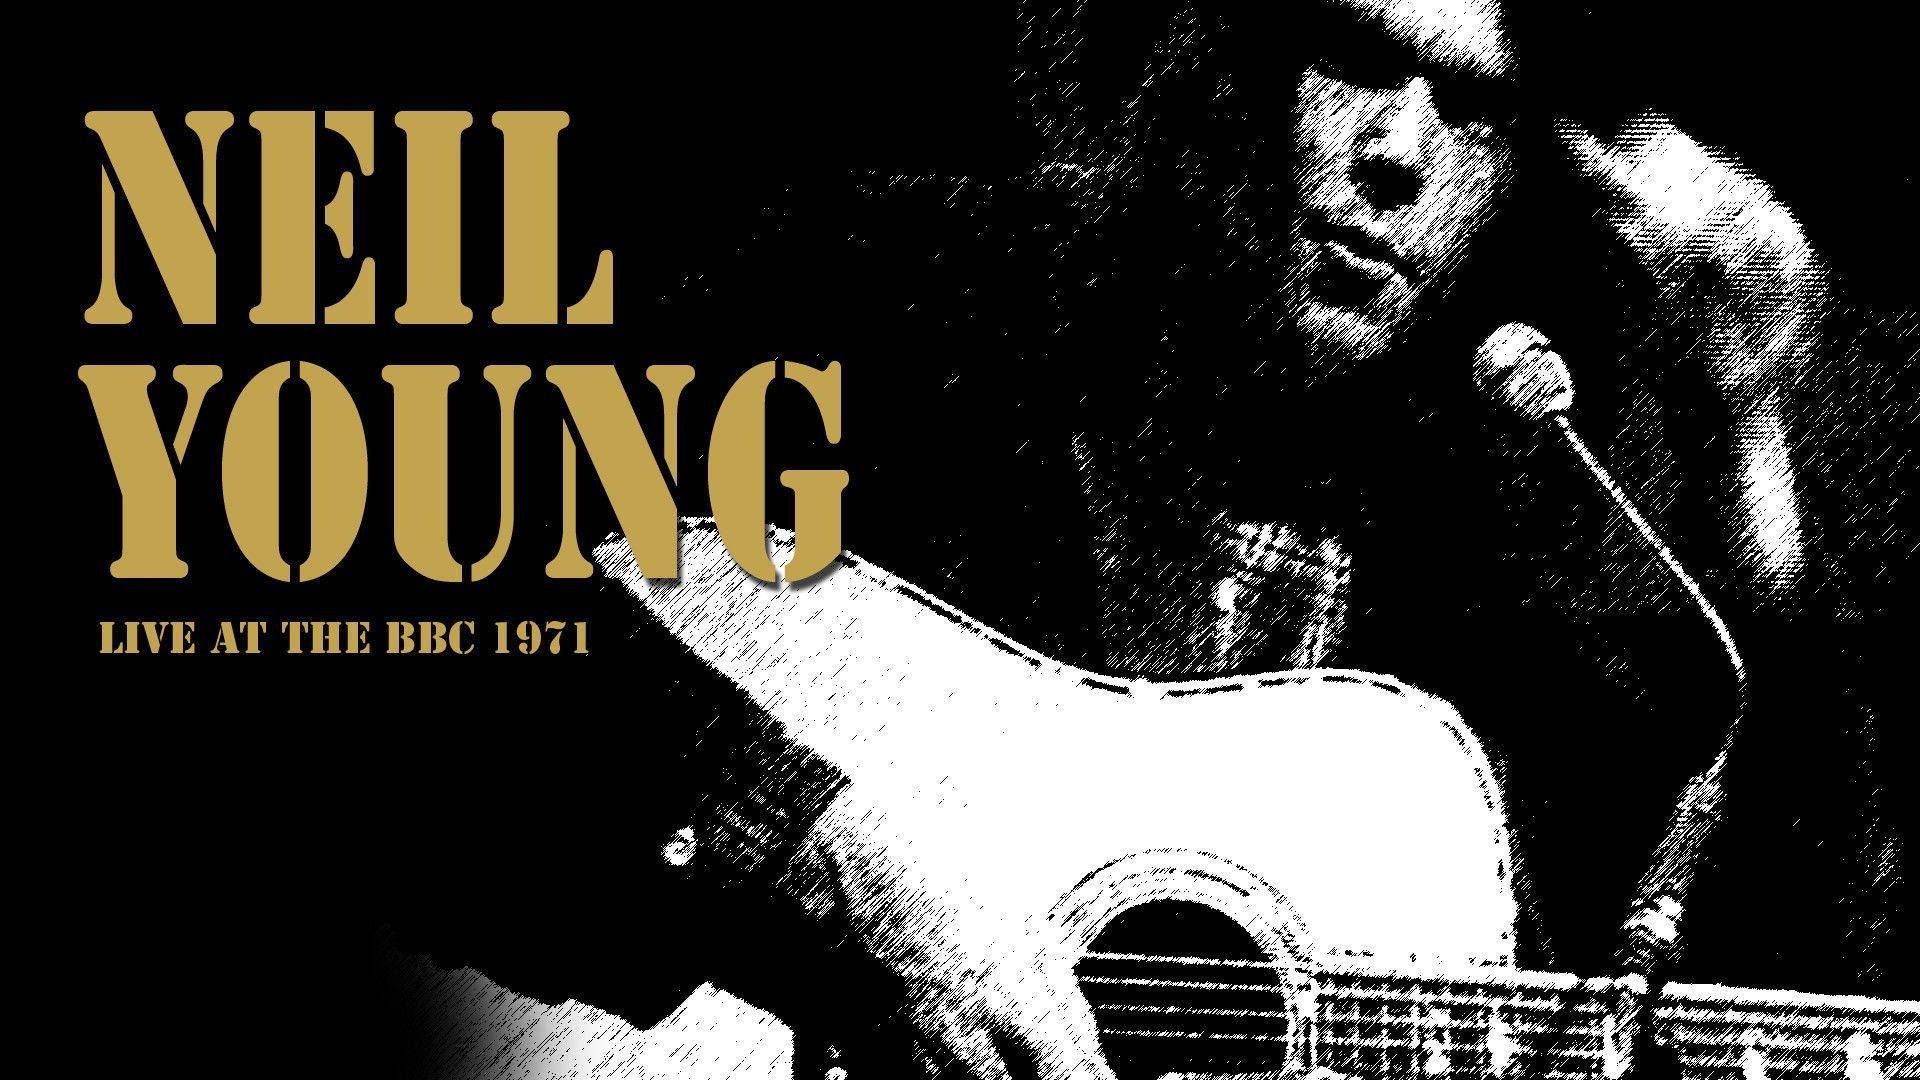 Imágenes De Neil Young